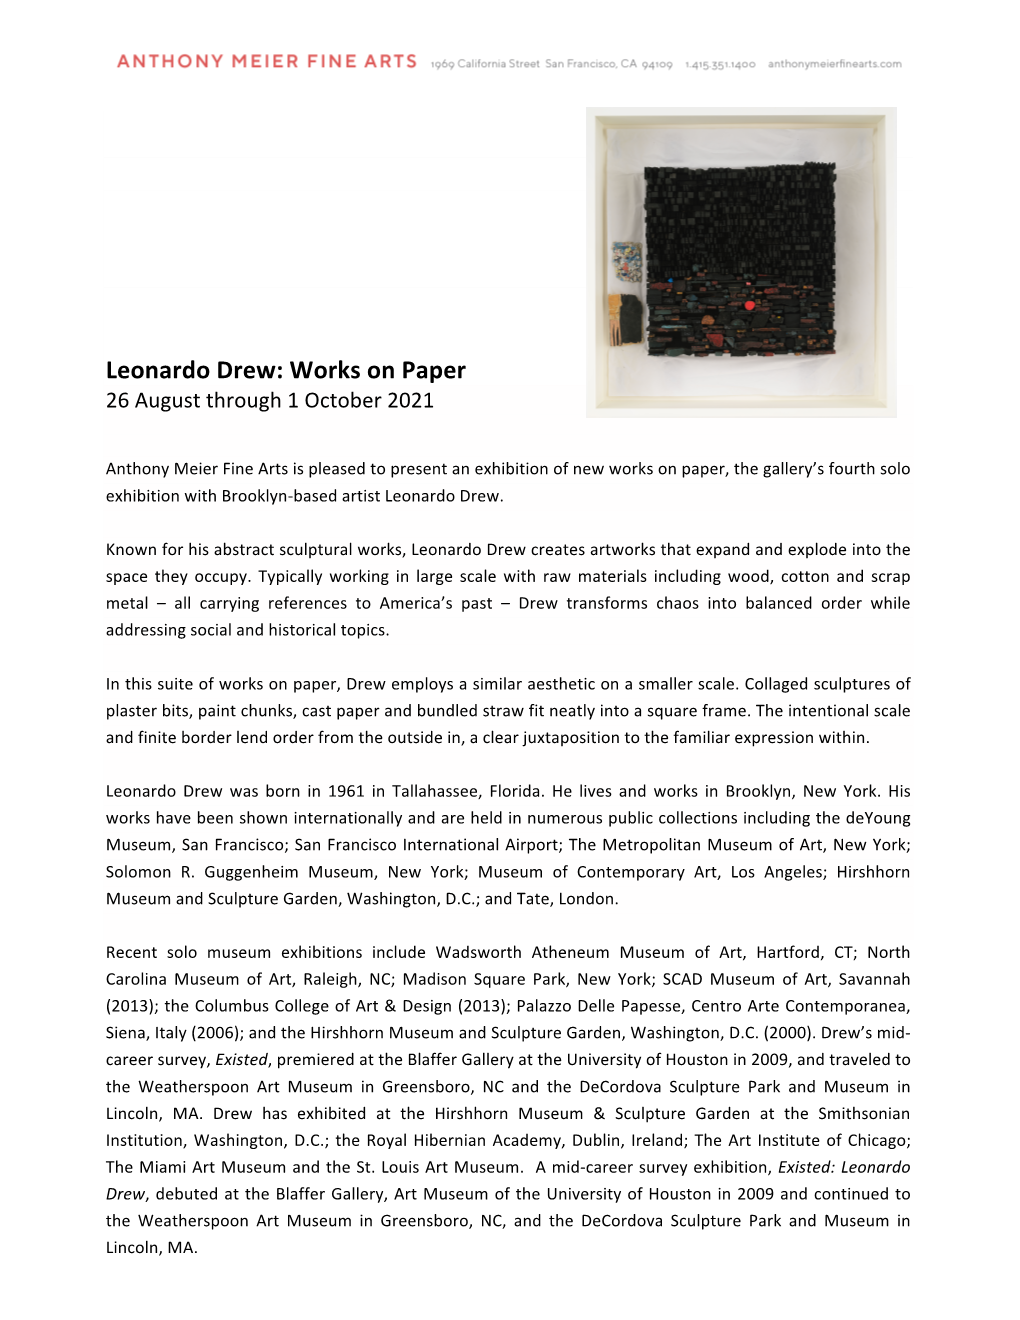 Leonardo Drew: Works on Paper 26 August Through 1 October 2021